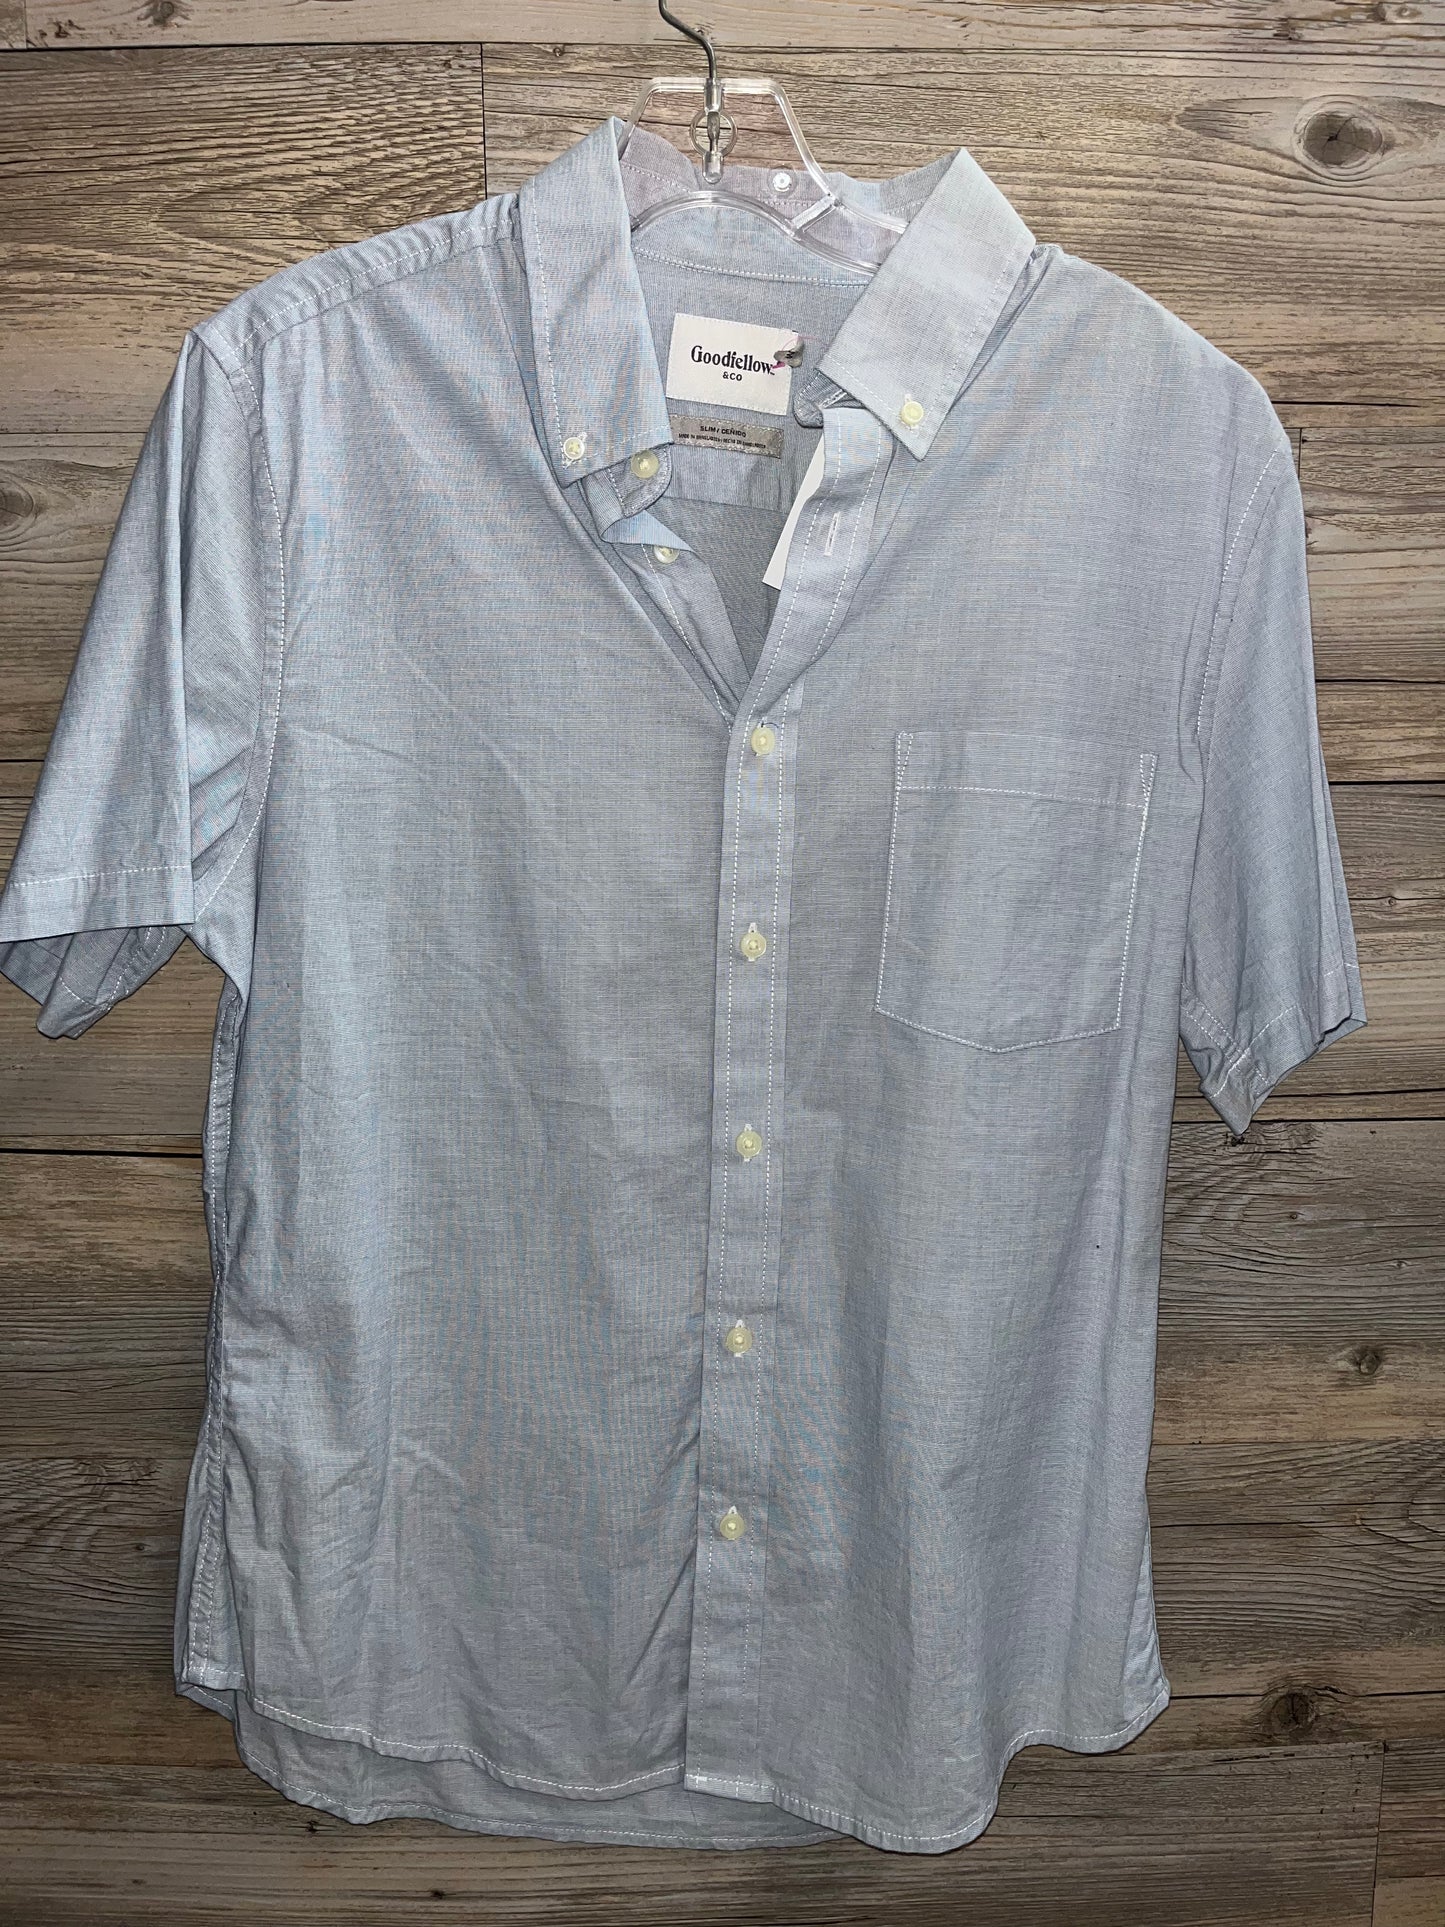 Goodfellow Collar Shirt, Size 10-12